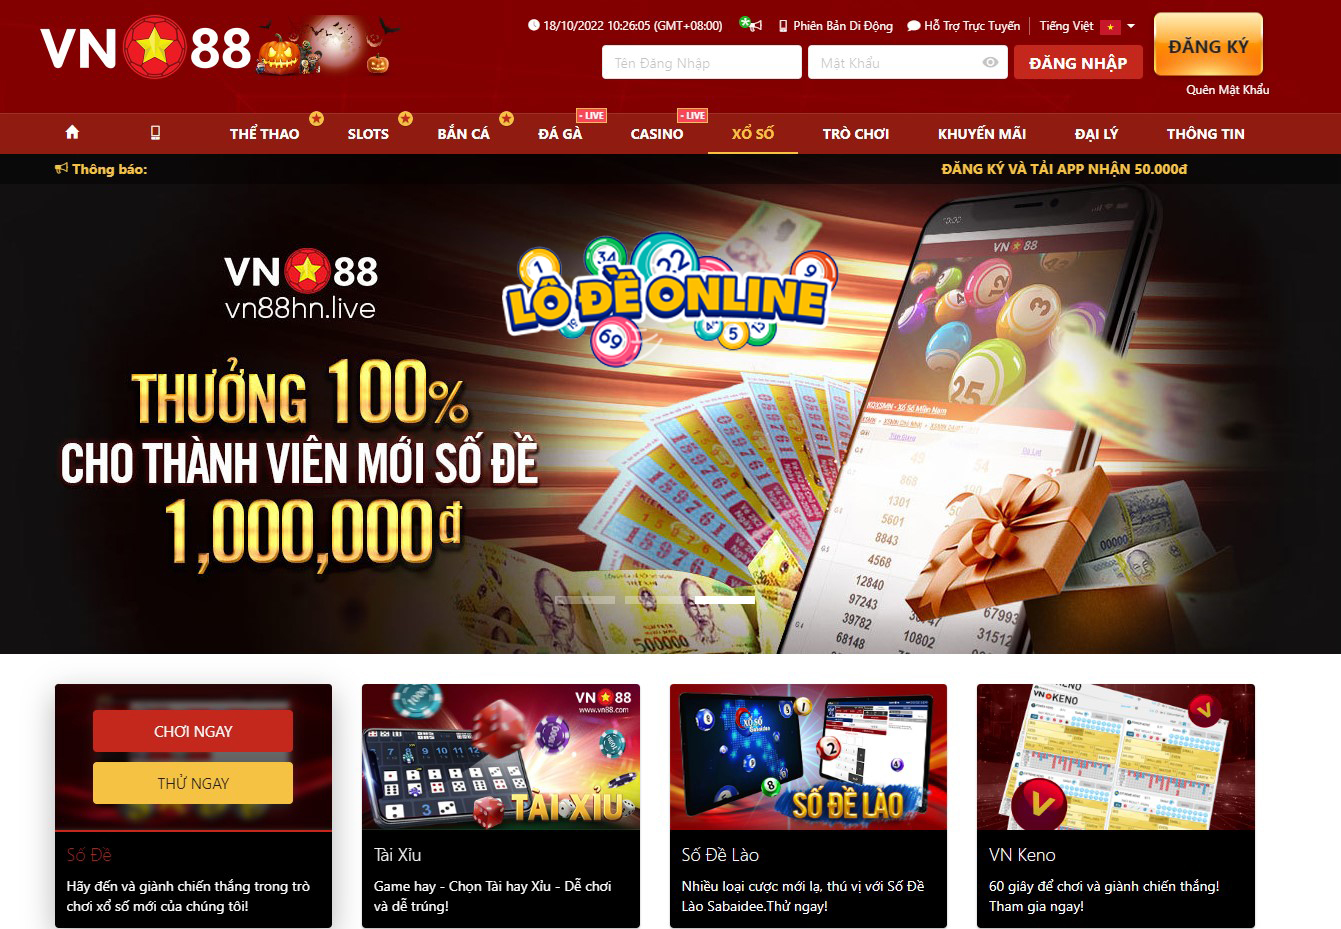 VN88 lô đề - Nhà cái cung cấp trò chơi lô đề uy tín hàng đầu Việt Nam